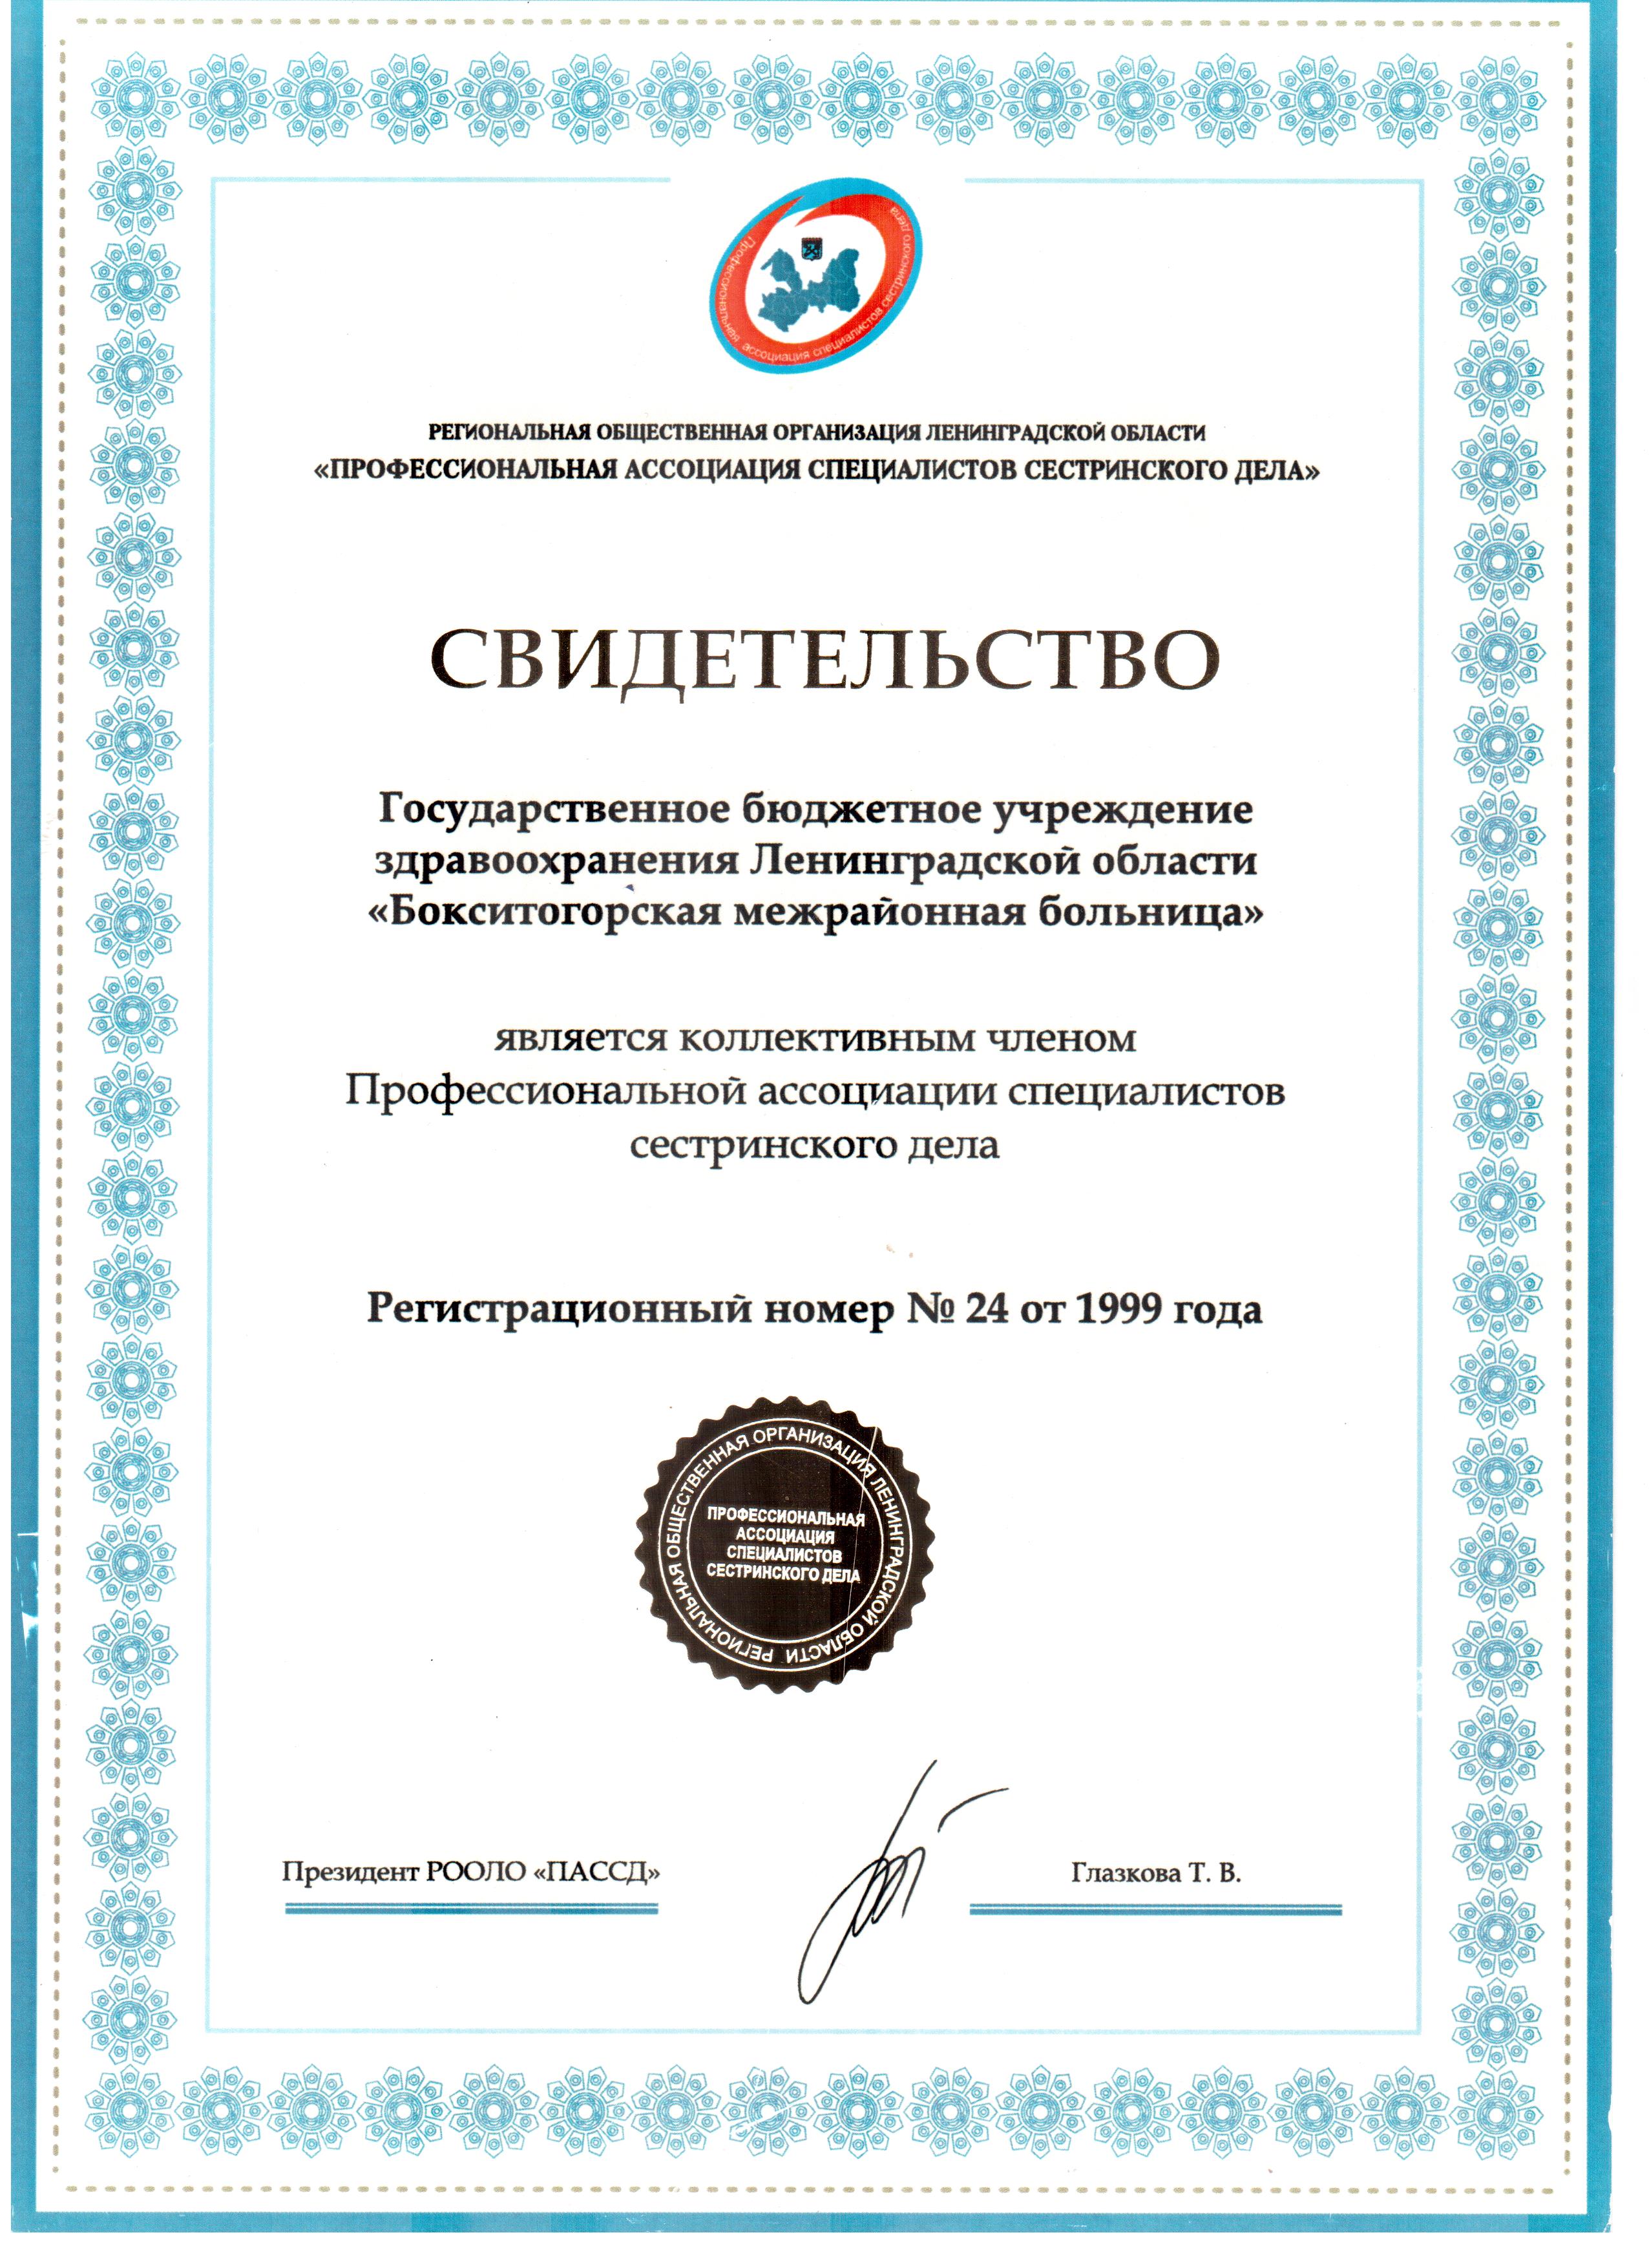 ГБУЗ ЛО "Бокситогорская МБ": сертификат